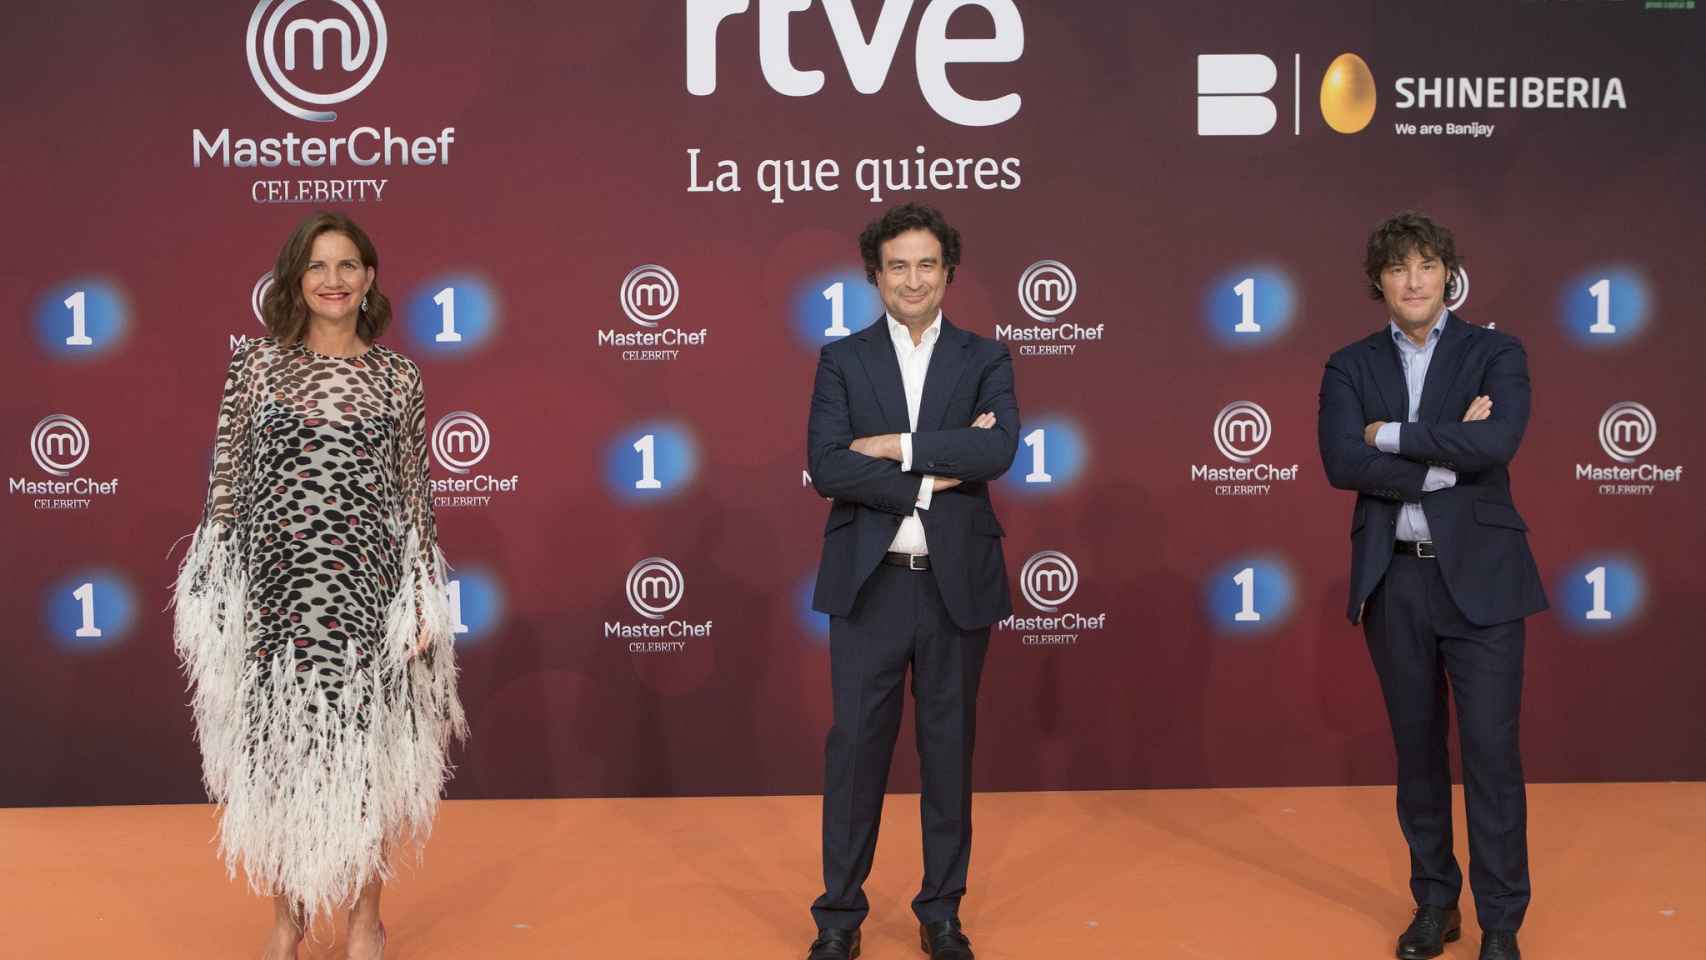 Masterchef Celebrities se ha presentado en en FesTVal de Vitoria, Euskadi. / FesTVal